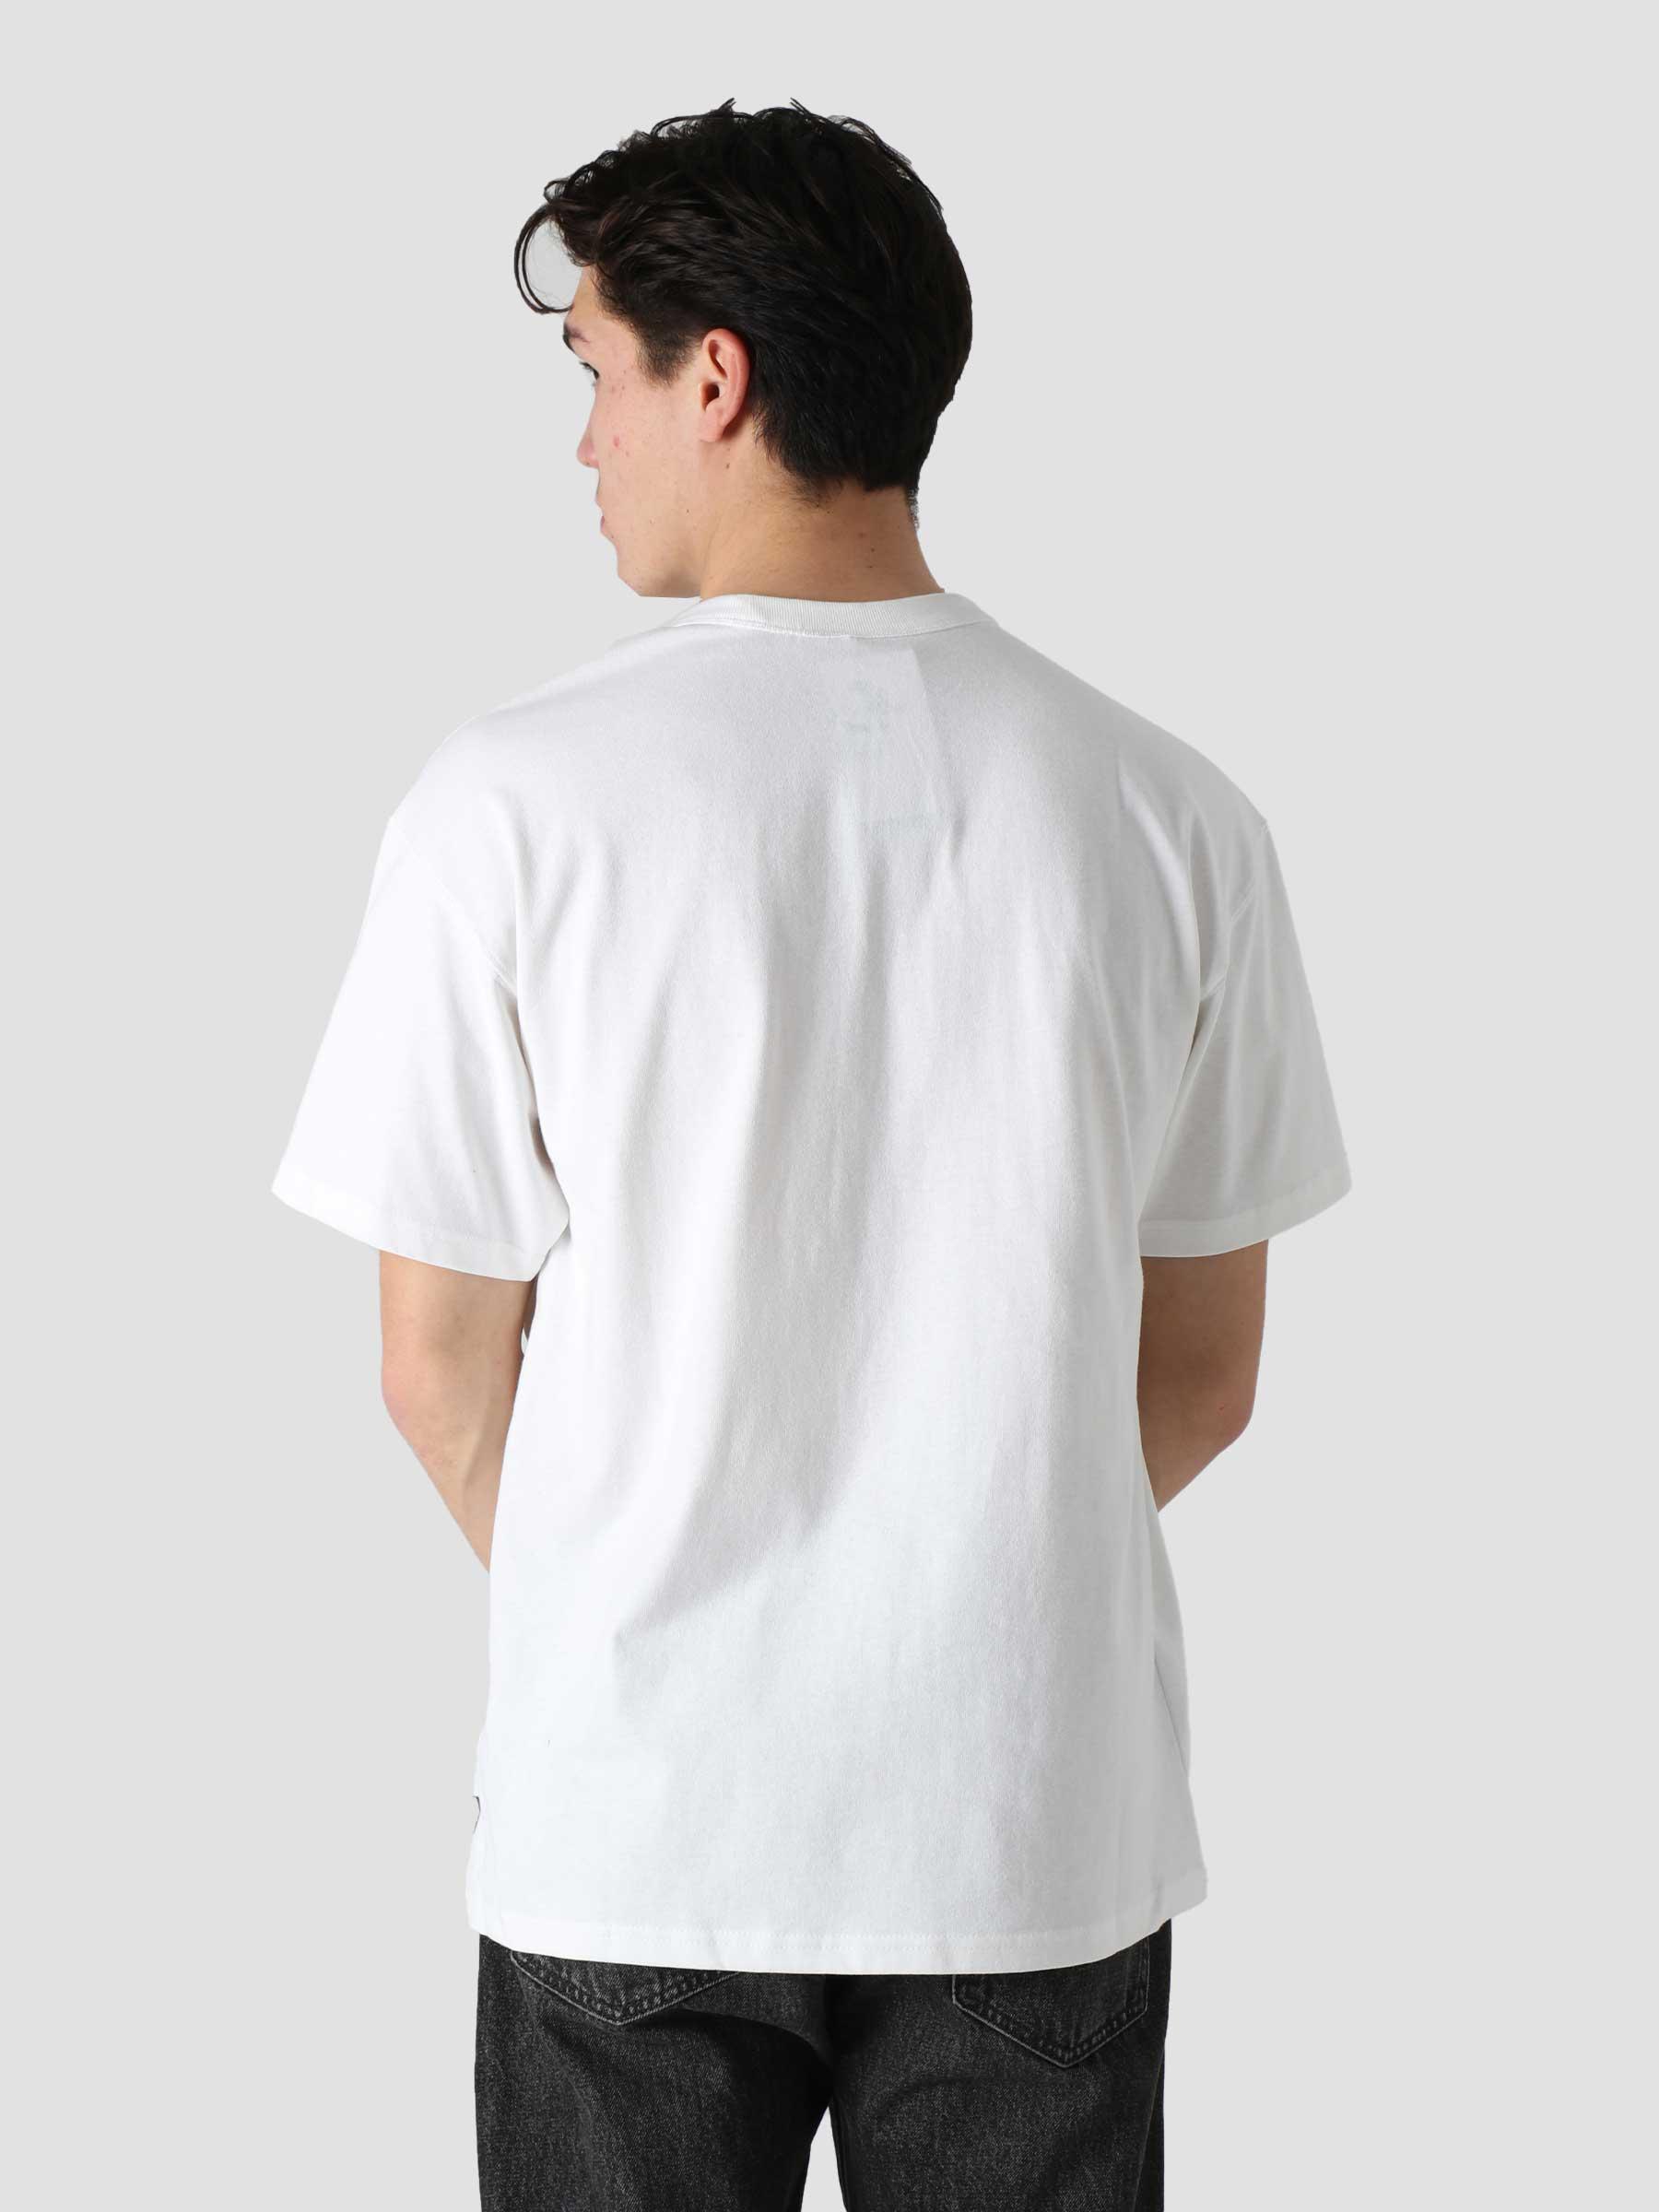 Nike NSW T-Shirt Premium Essential White White - Freshcotton